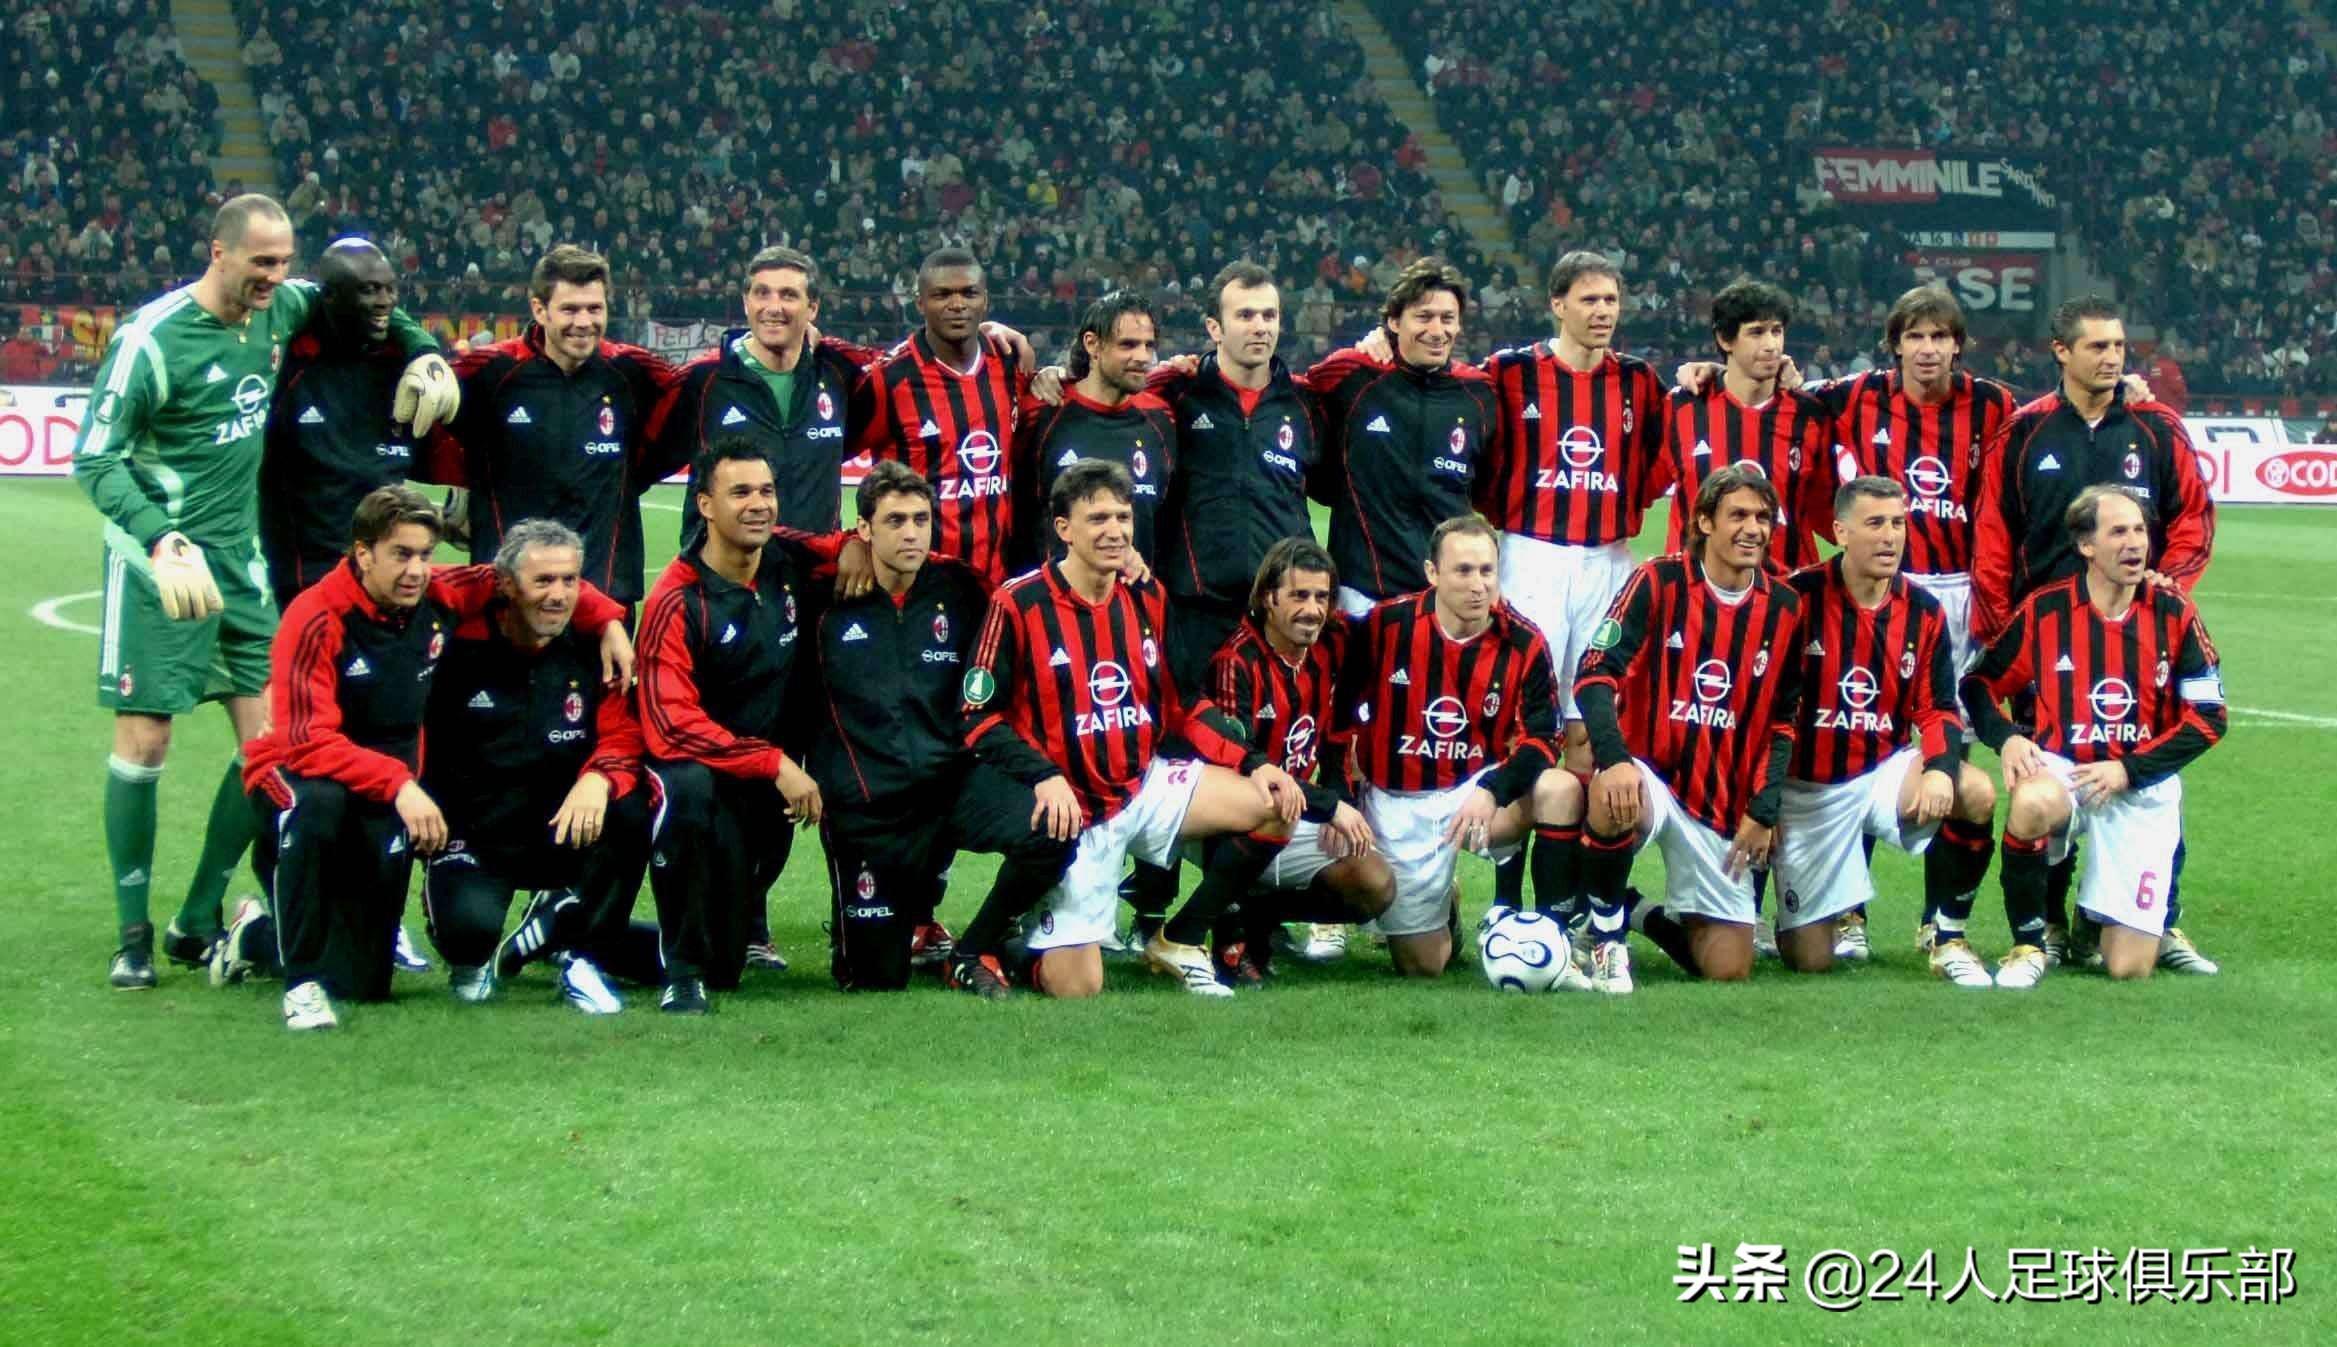 07年欧冠决赛下半场 2007年AC米兰的欧冠冠军之路(6)